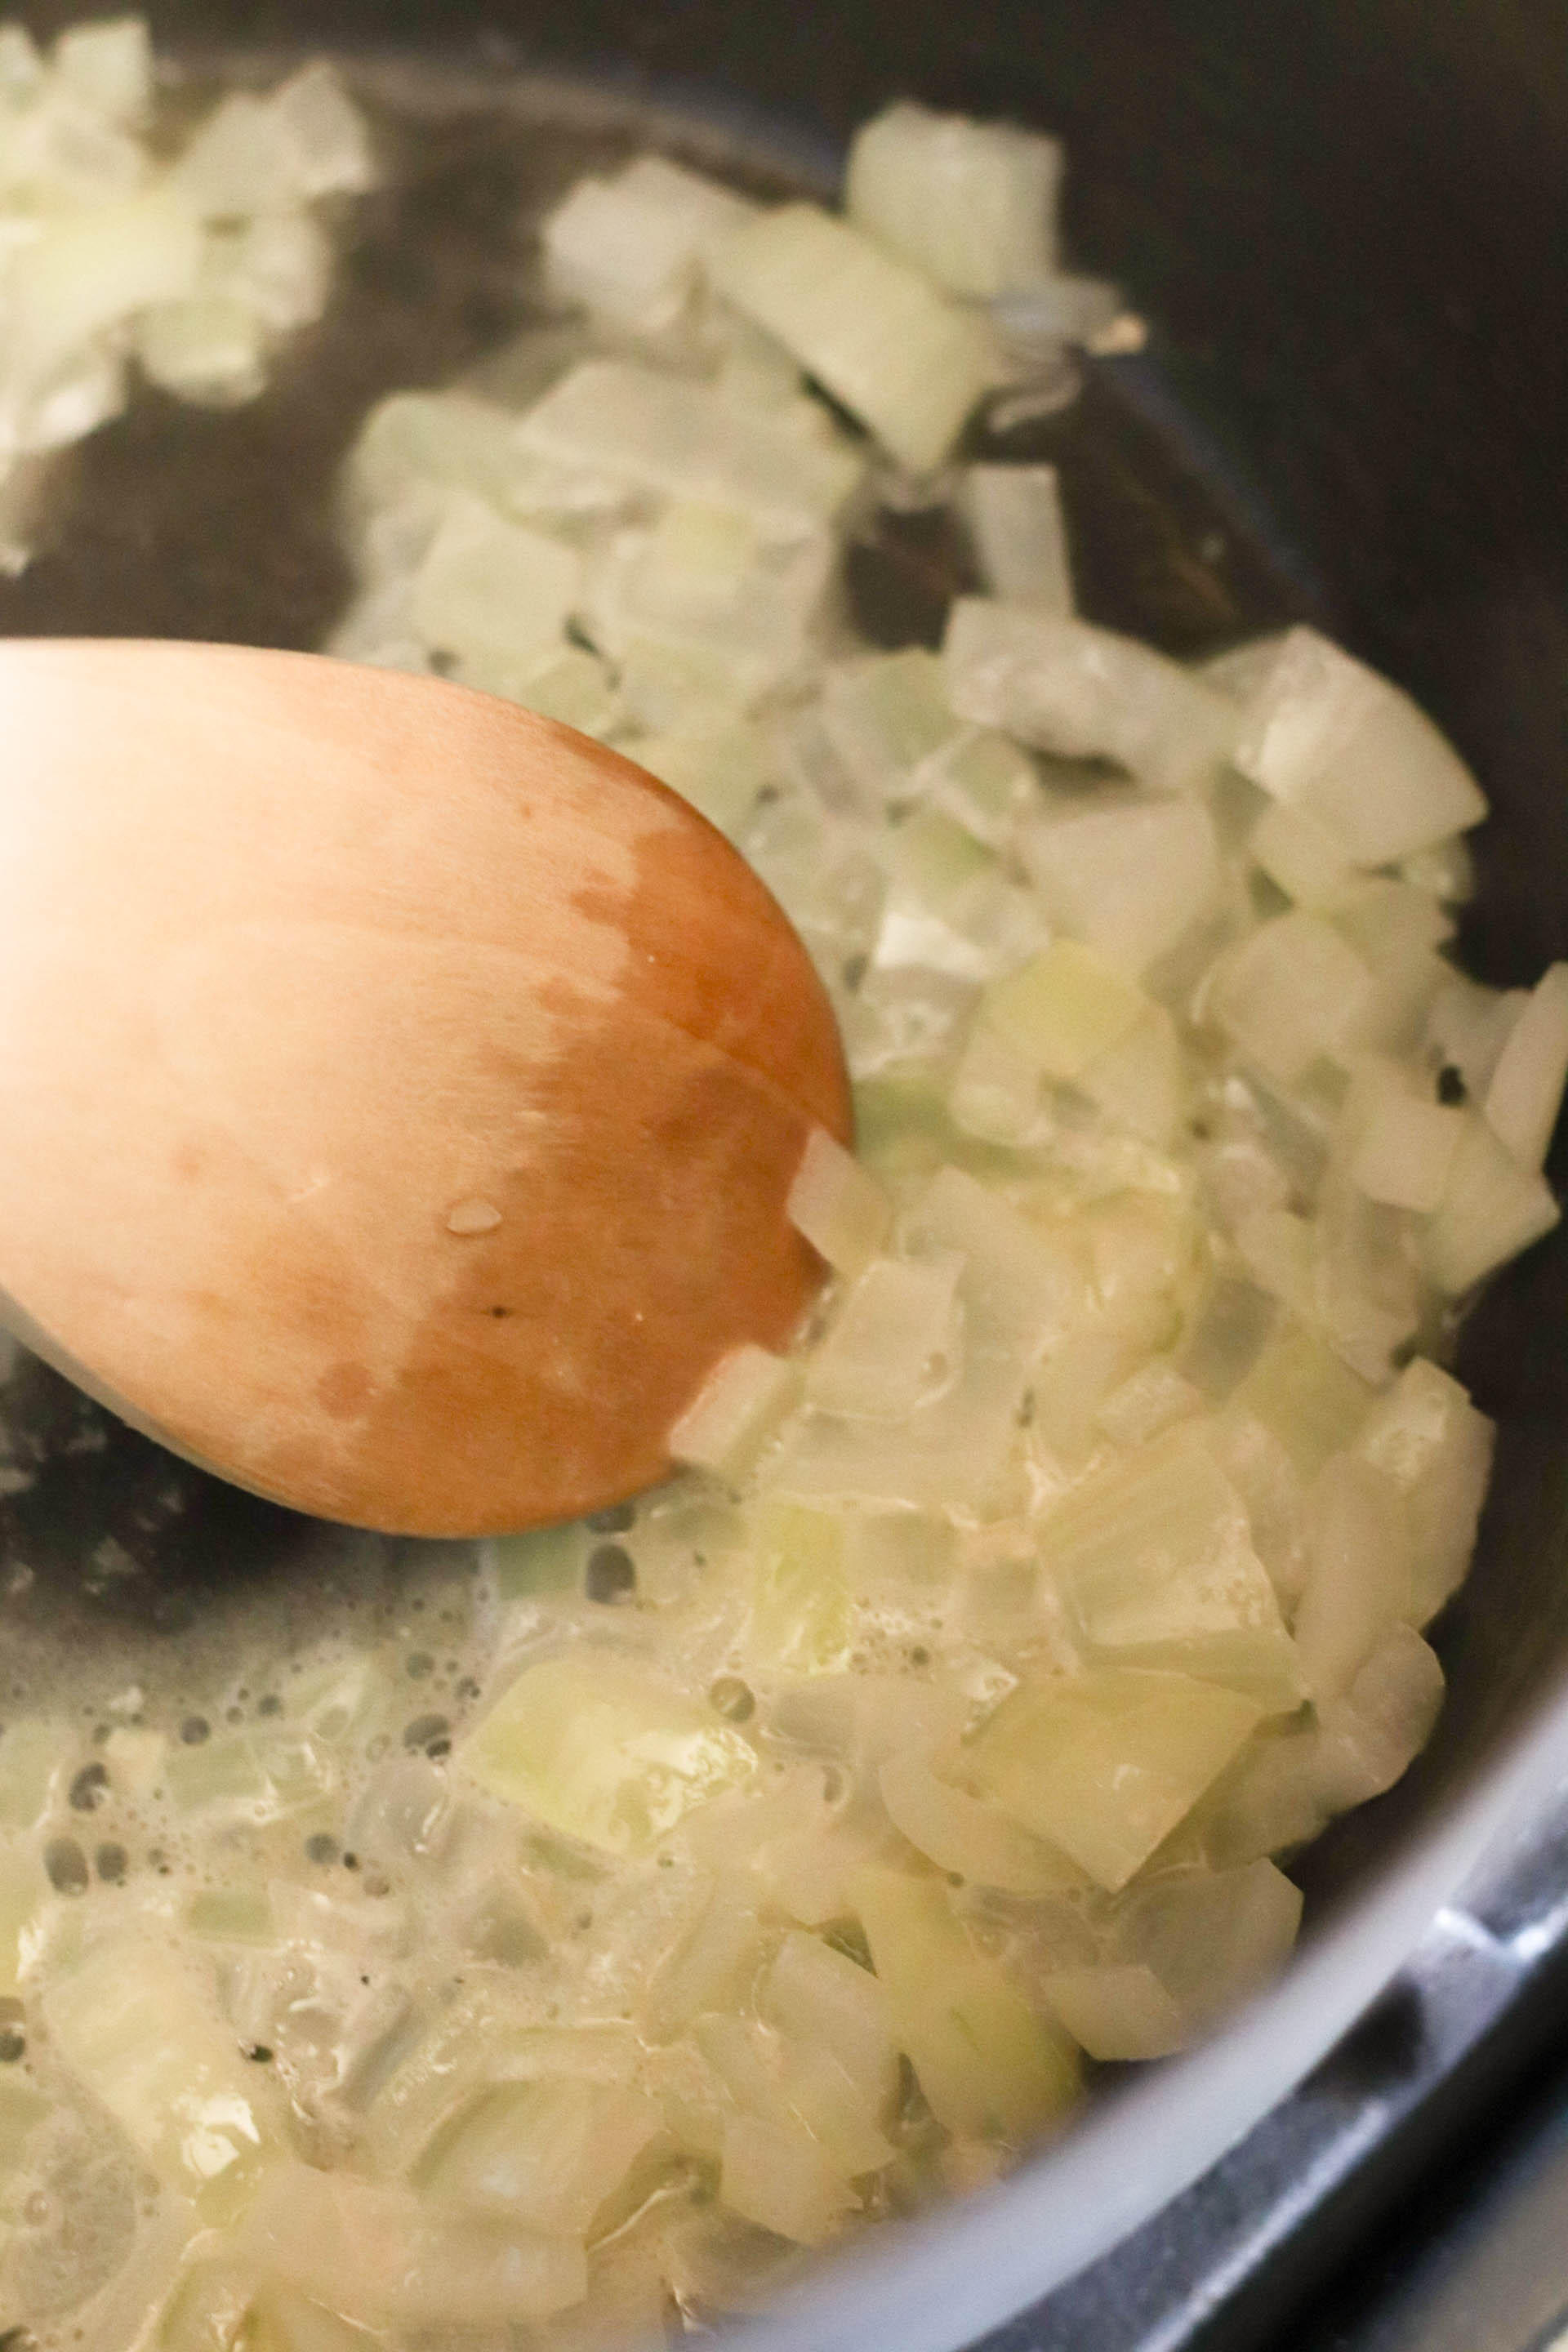 Onions sautéing in a sauce pot